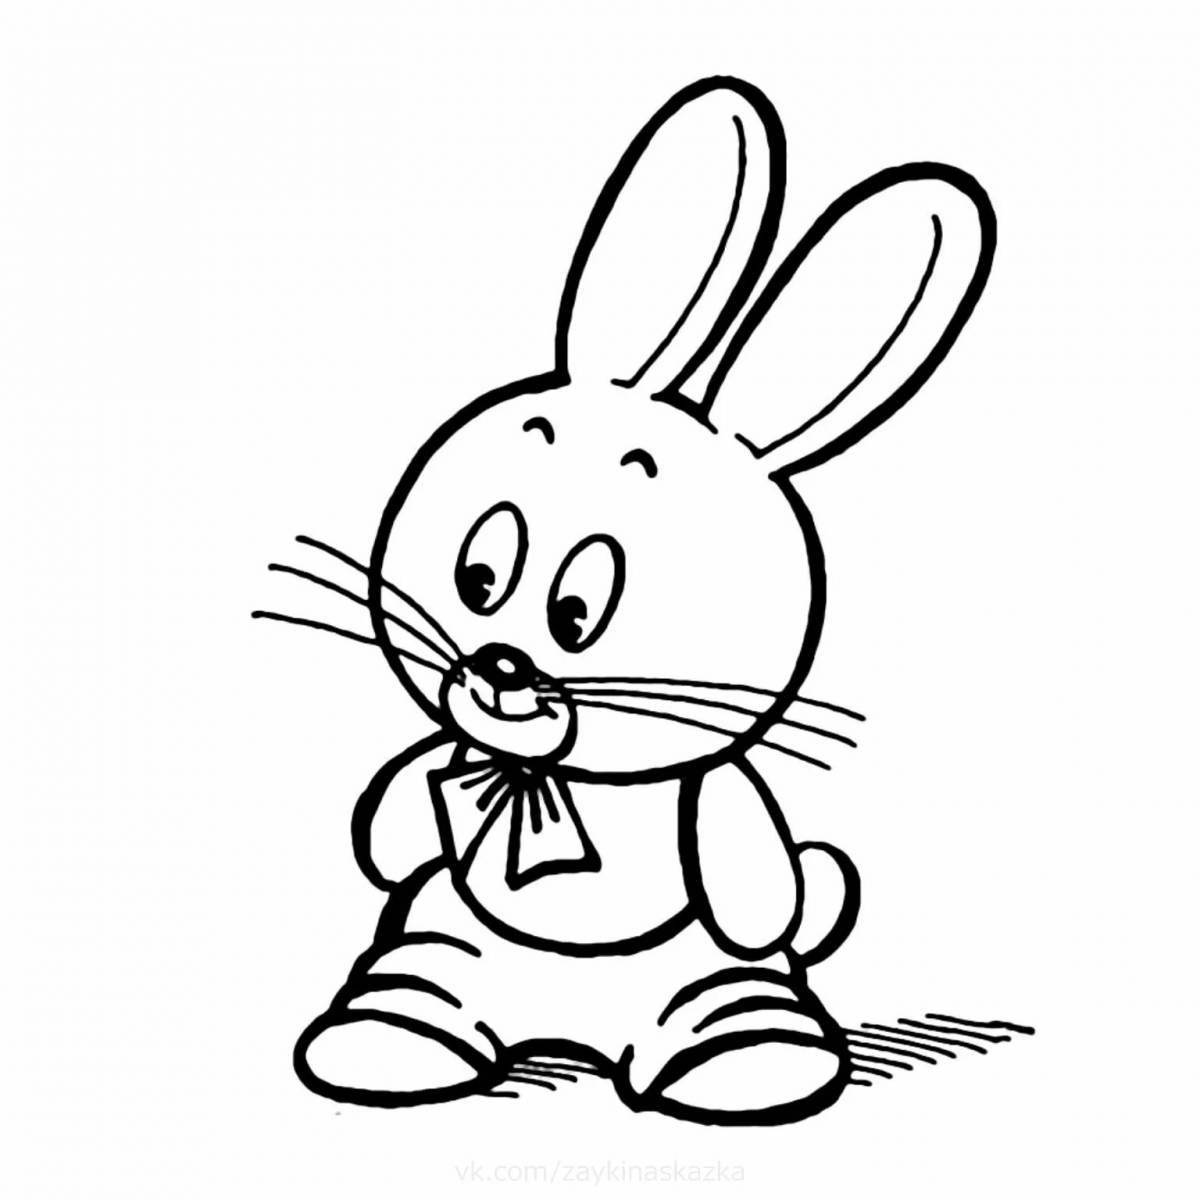 Великолепный рисунок кролика для детей